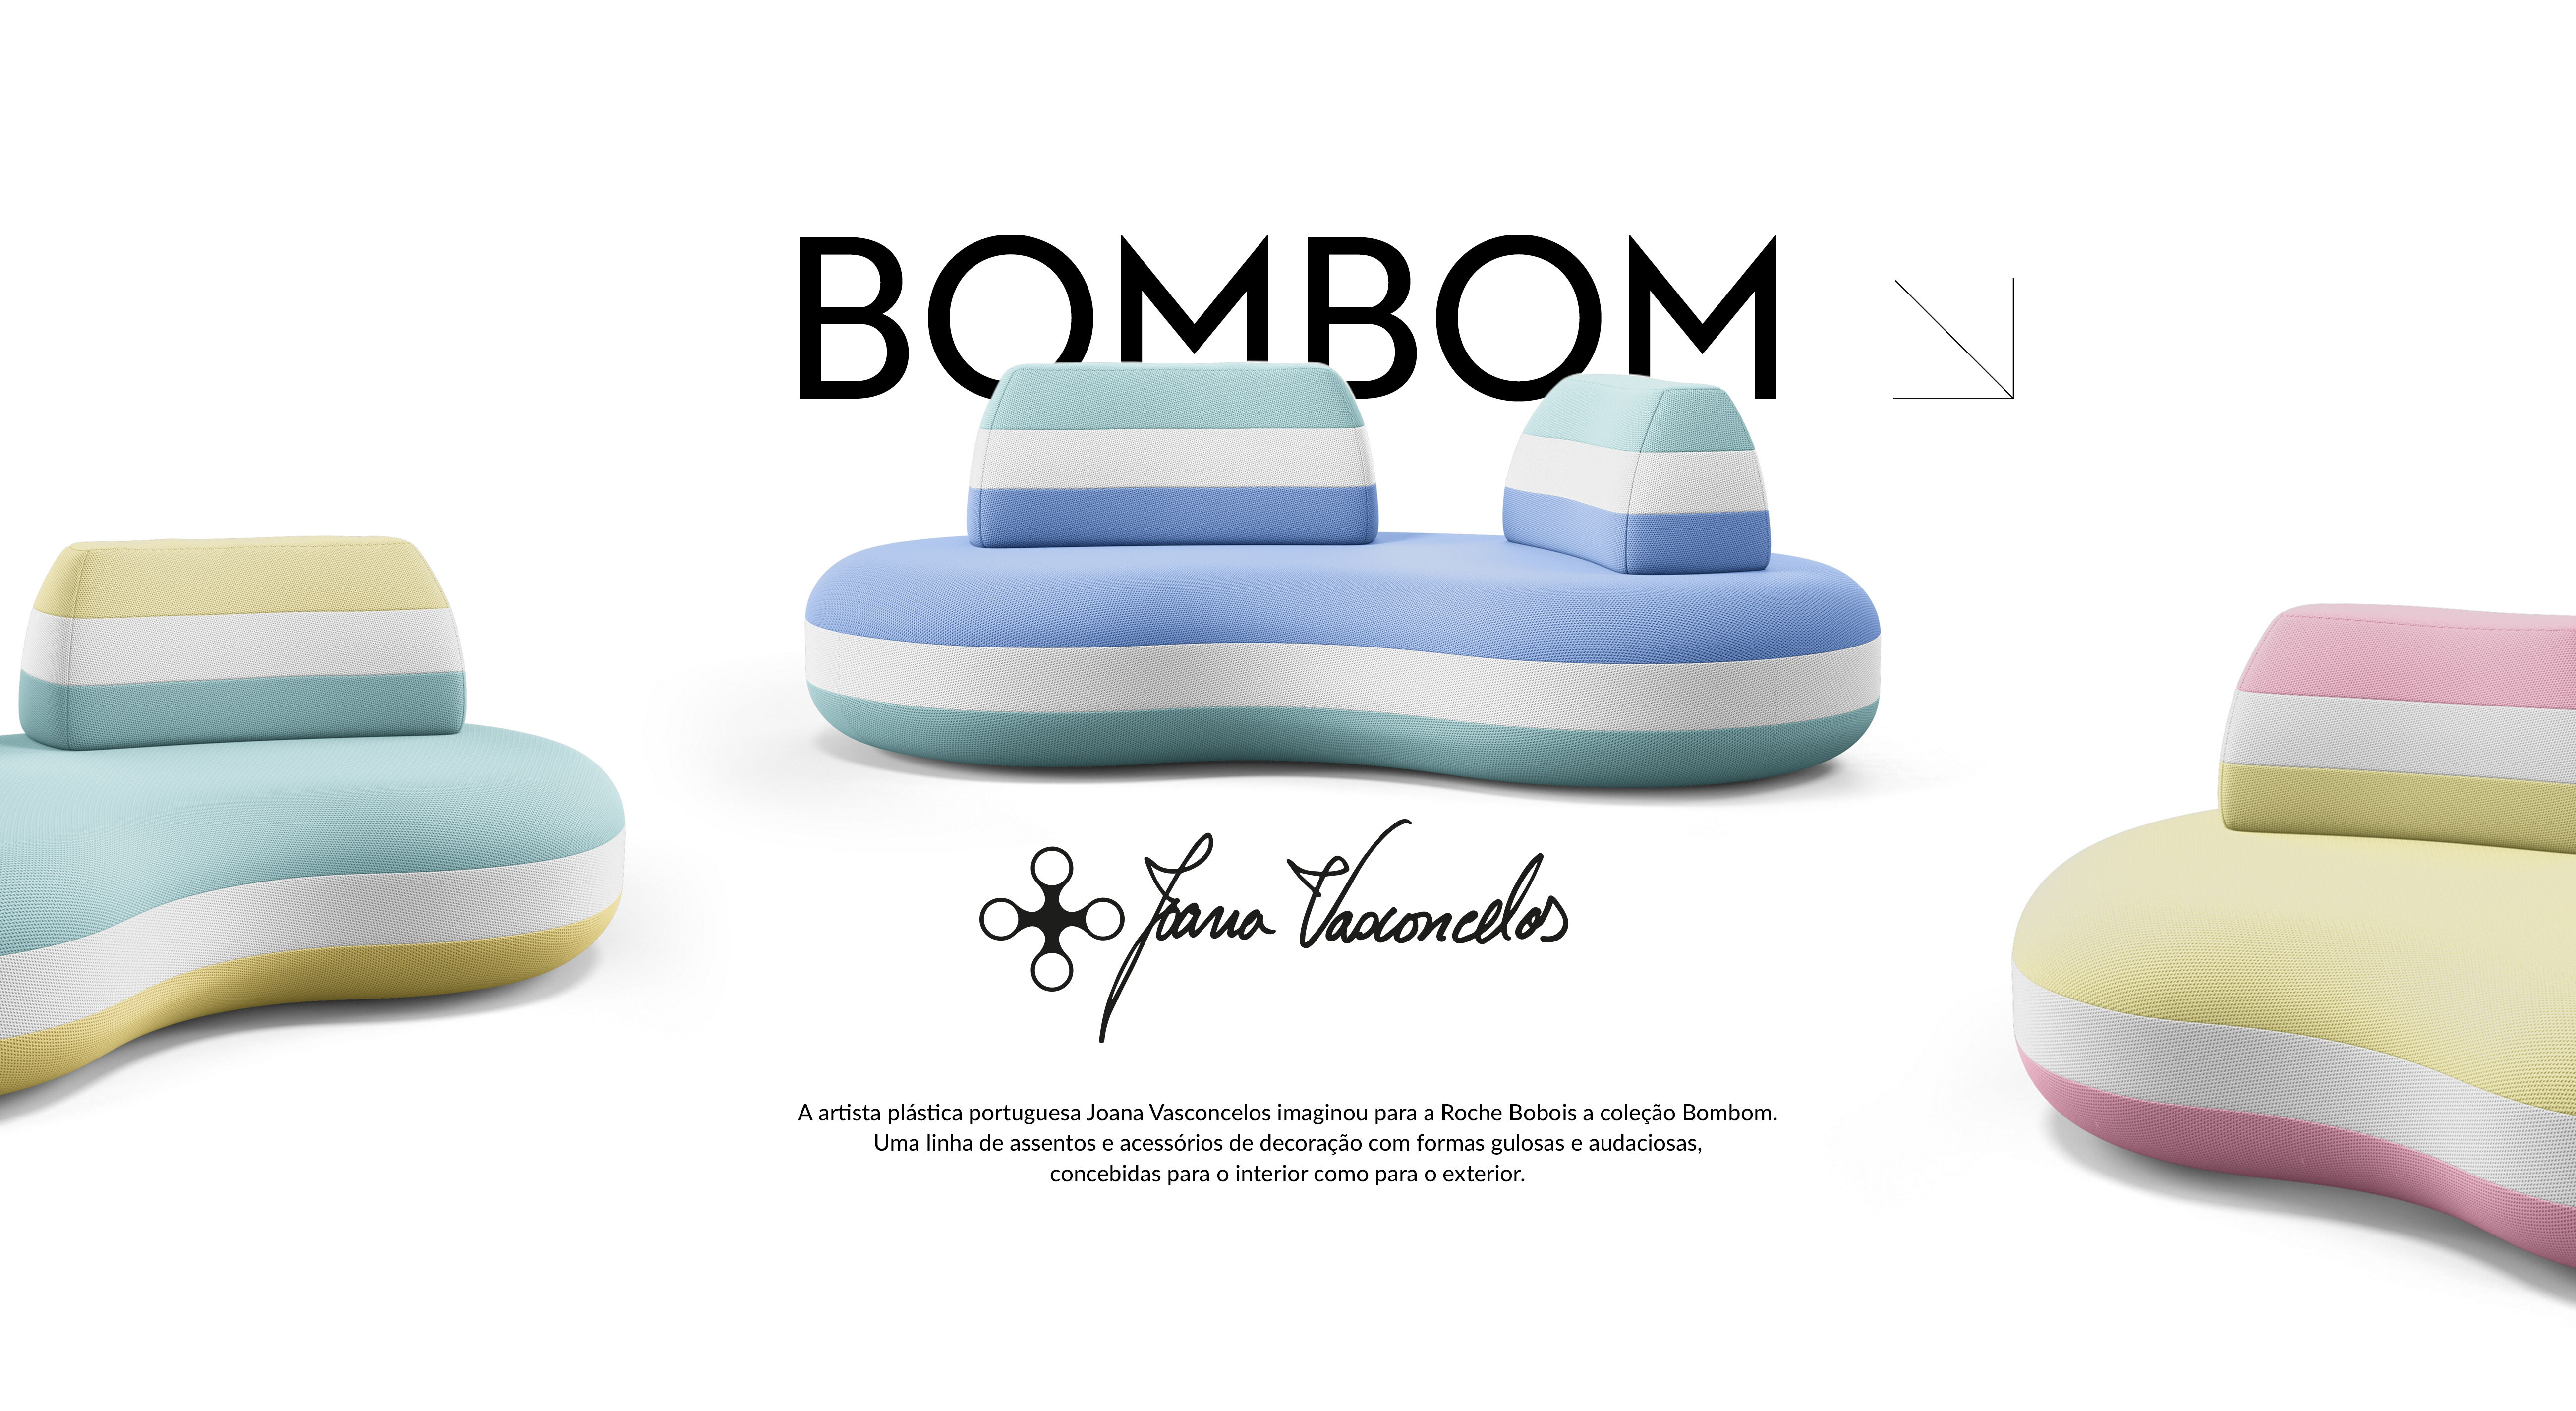 A artista plástica portuguesa Joana Vasconcelos imaginou para a Roche Bobois a coleção Bombom. Uma linha de assentos e acessórios de decoração com formas gulosas e audaciosas, concebidas para o interior como para o exterior.